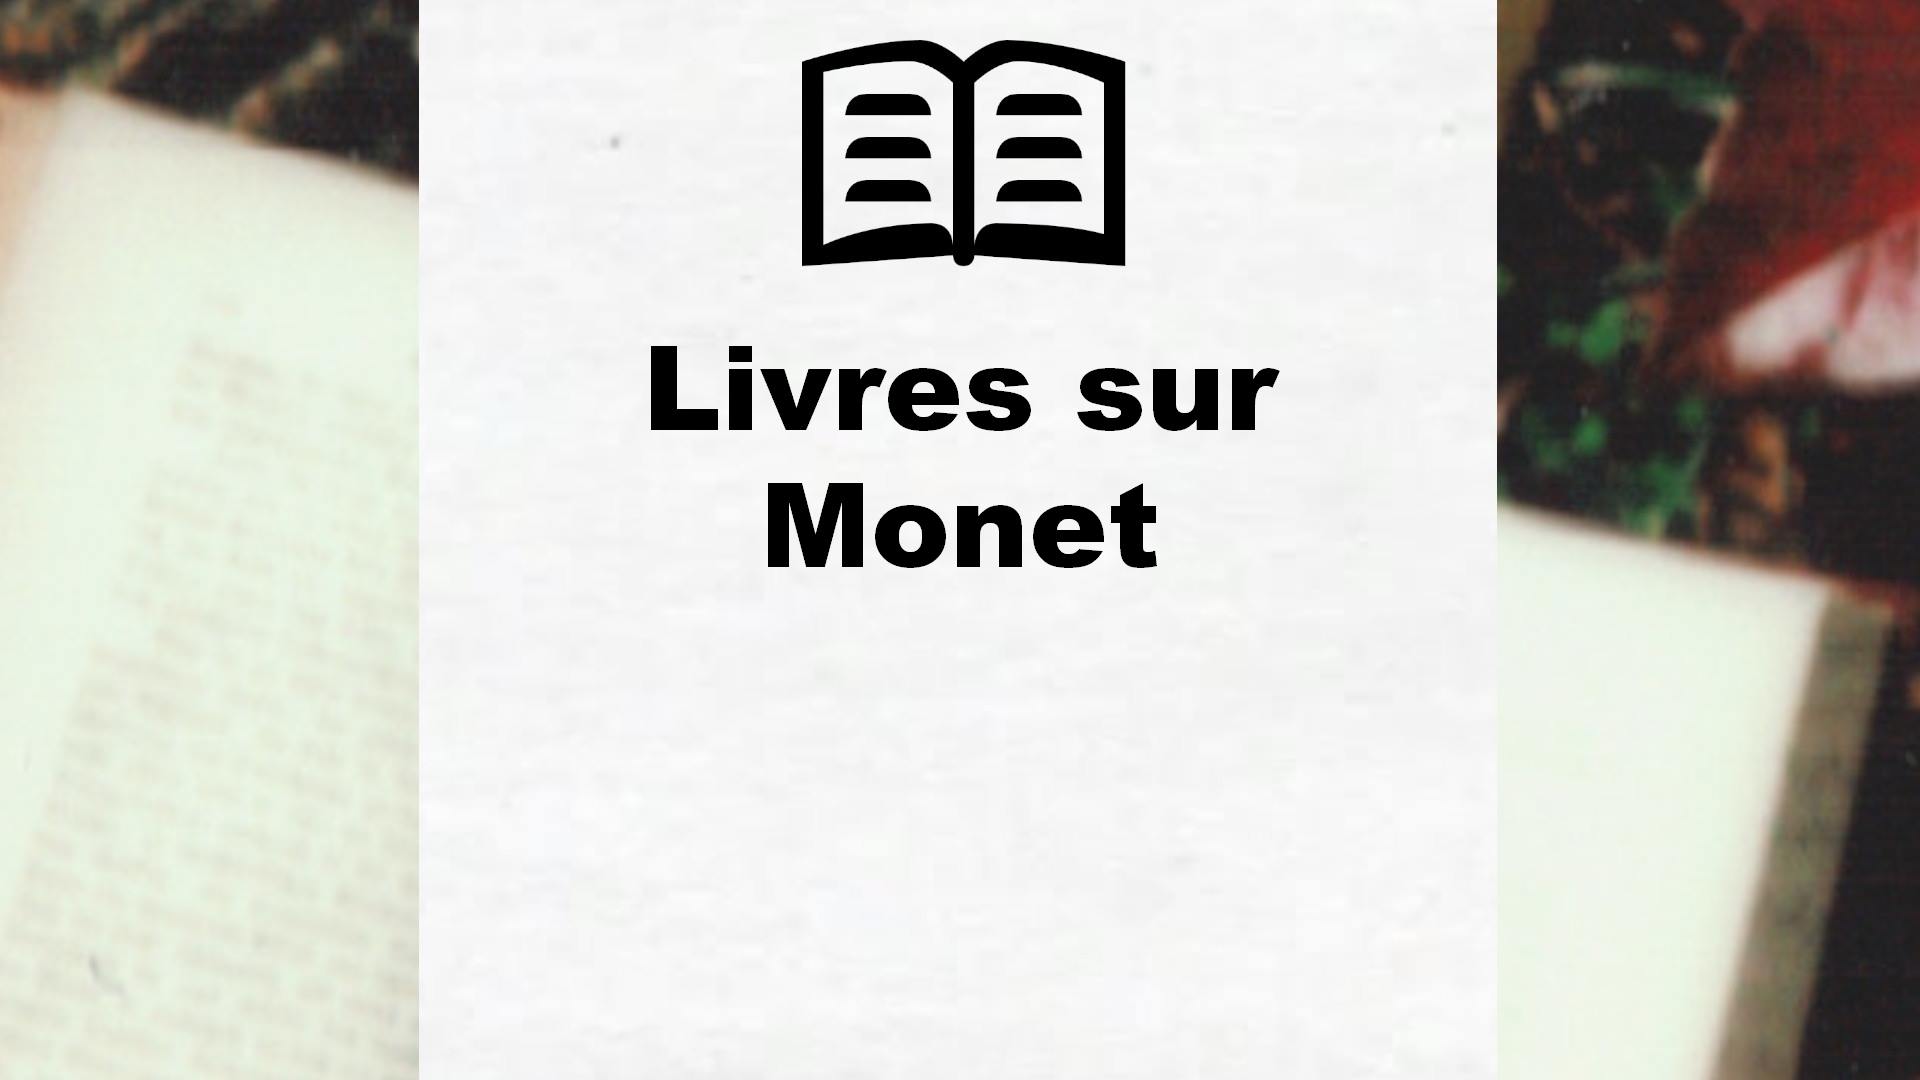 Livres sur Monet